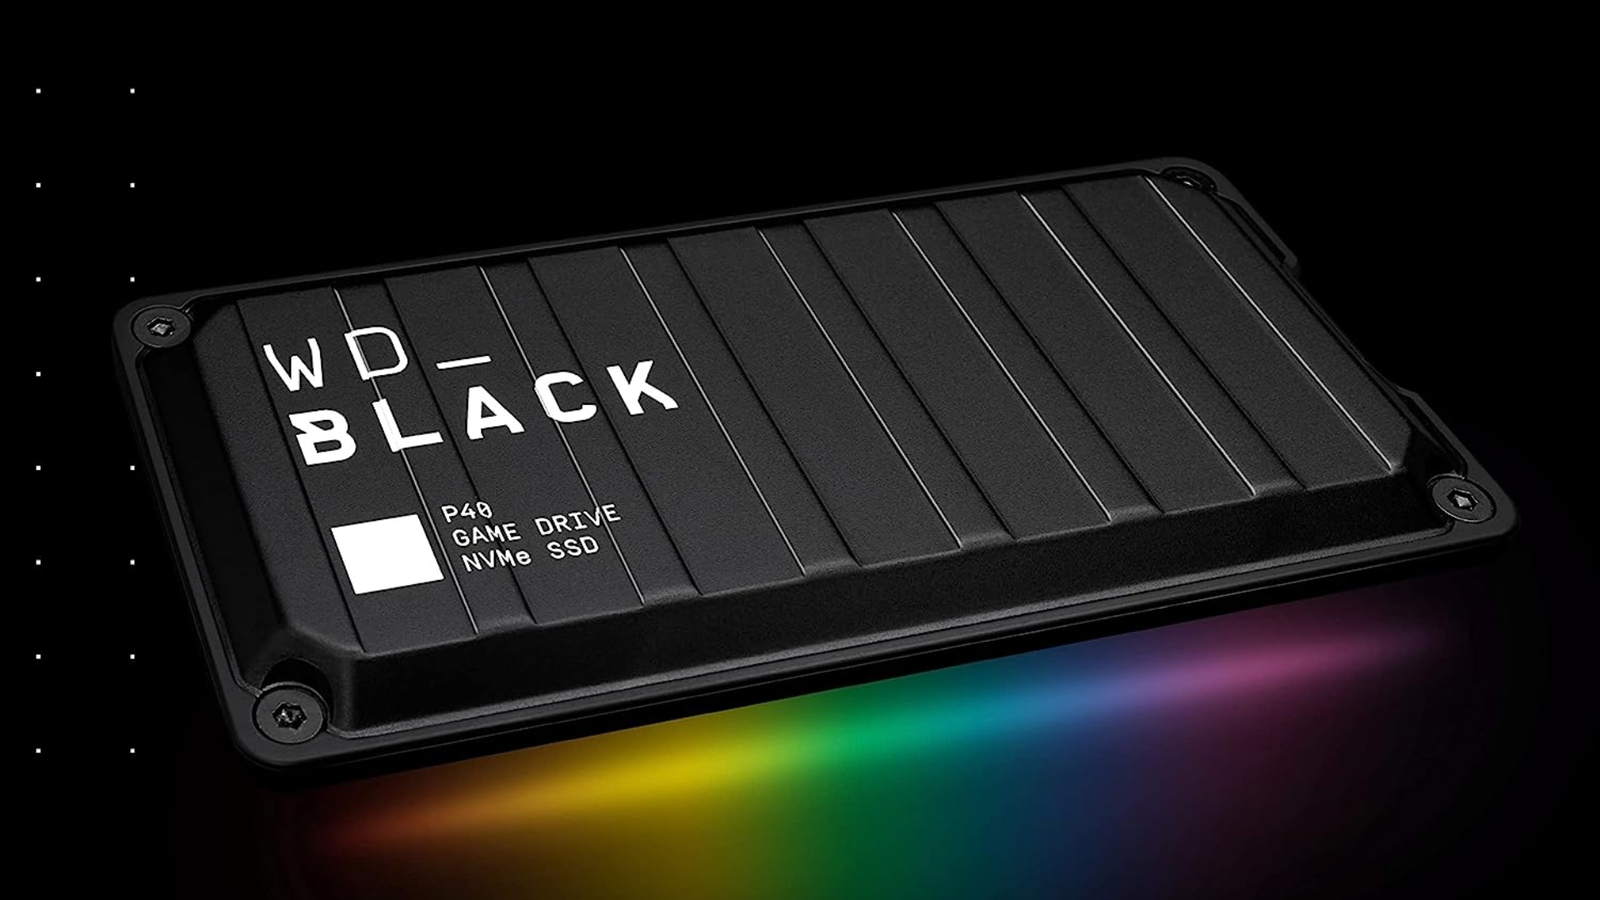 WD_BLACK P40: SSD externo como expansão da memória do seu videogame